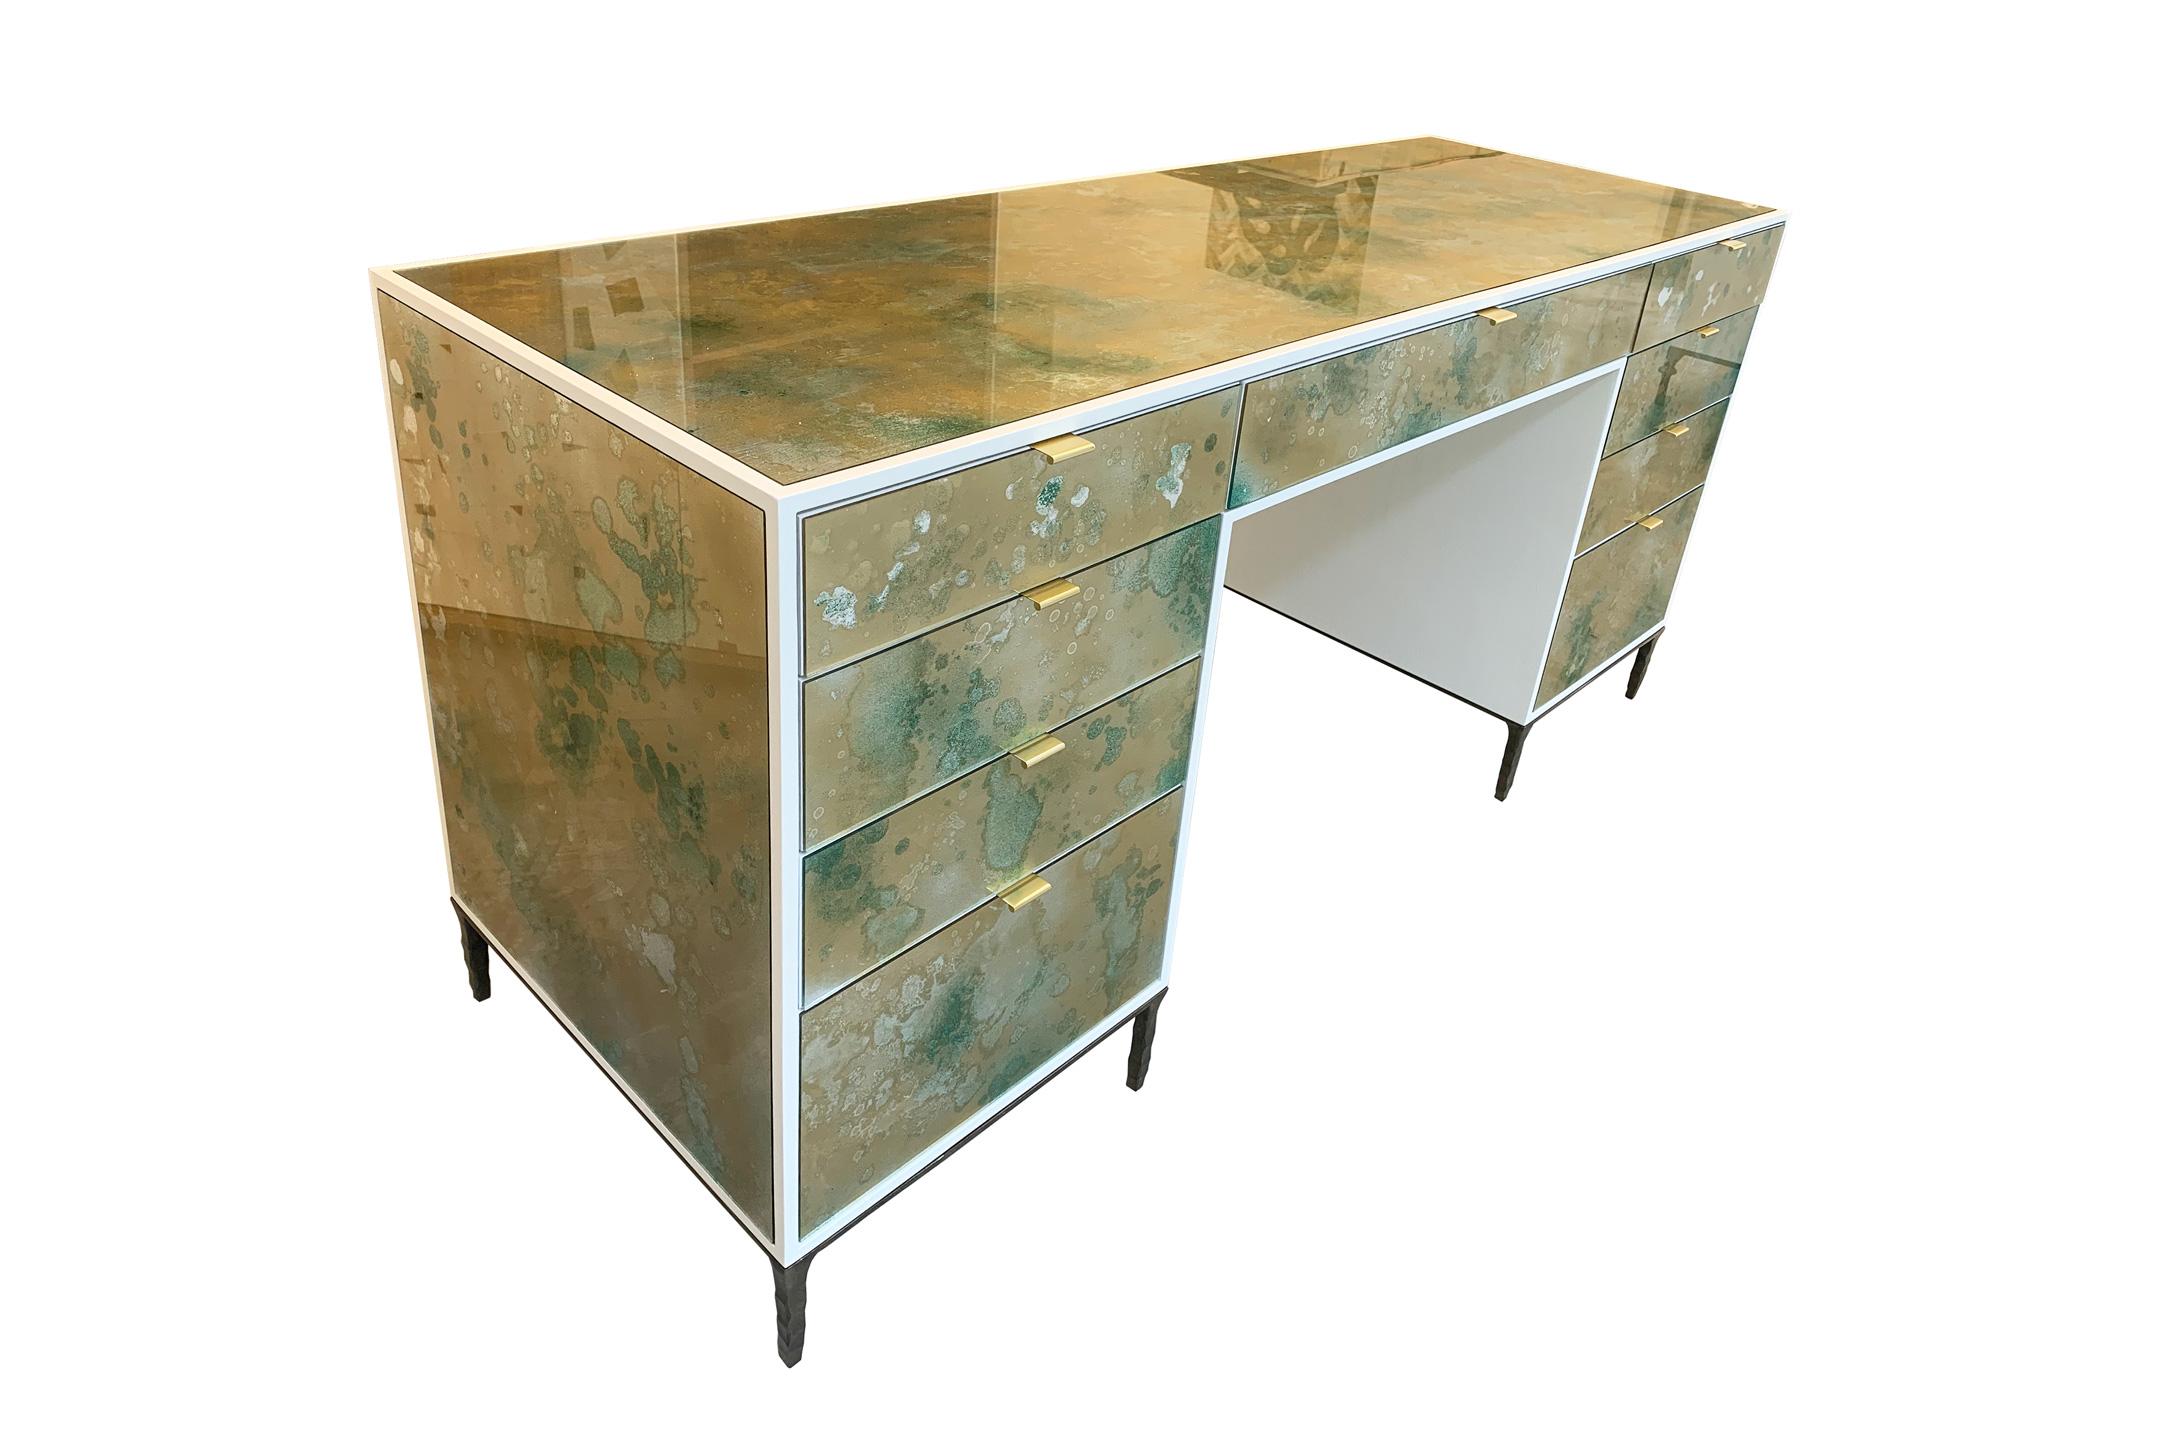 Le meuble-lavabo Mystic Byzantine Gold Green d'Ercole Home comporte 9 tiroirs, avec une finition en bois ivoire sur chêne. Des panneaux de verre églomisé peints à la main sont insérés dans la surface.
Il y a neuf poignées en finition laiton